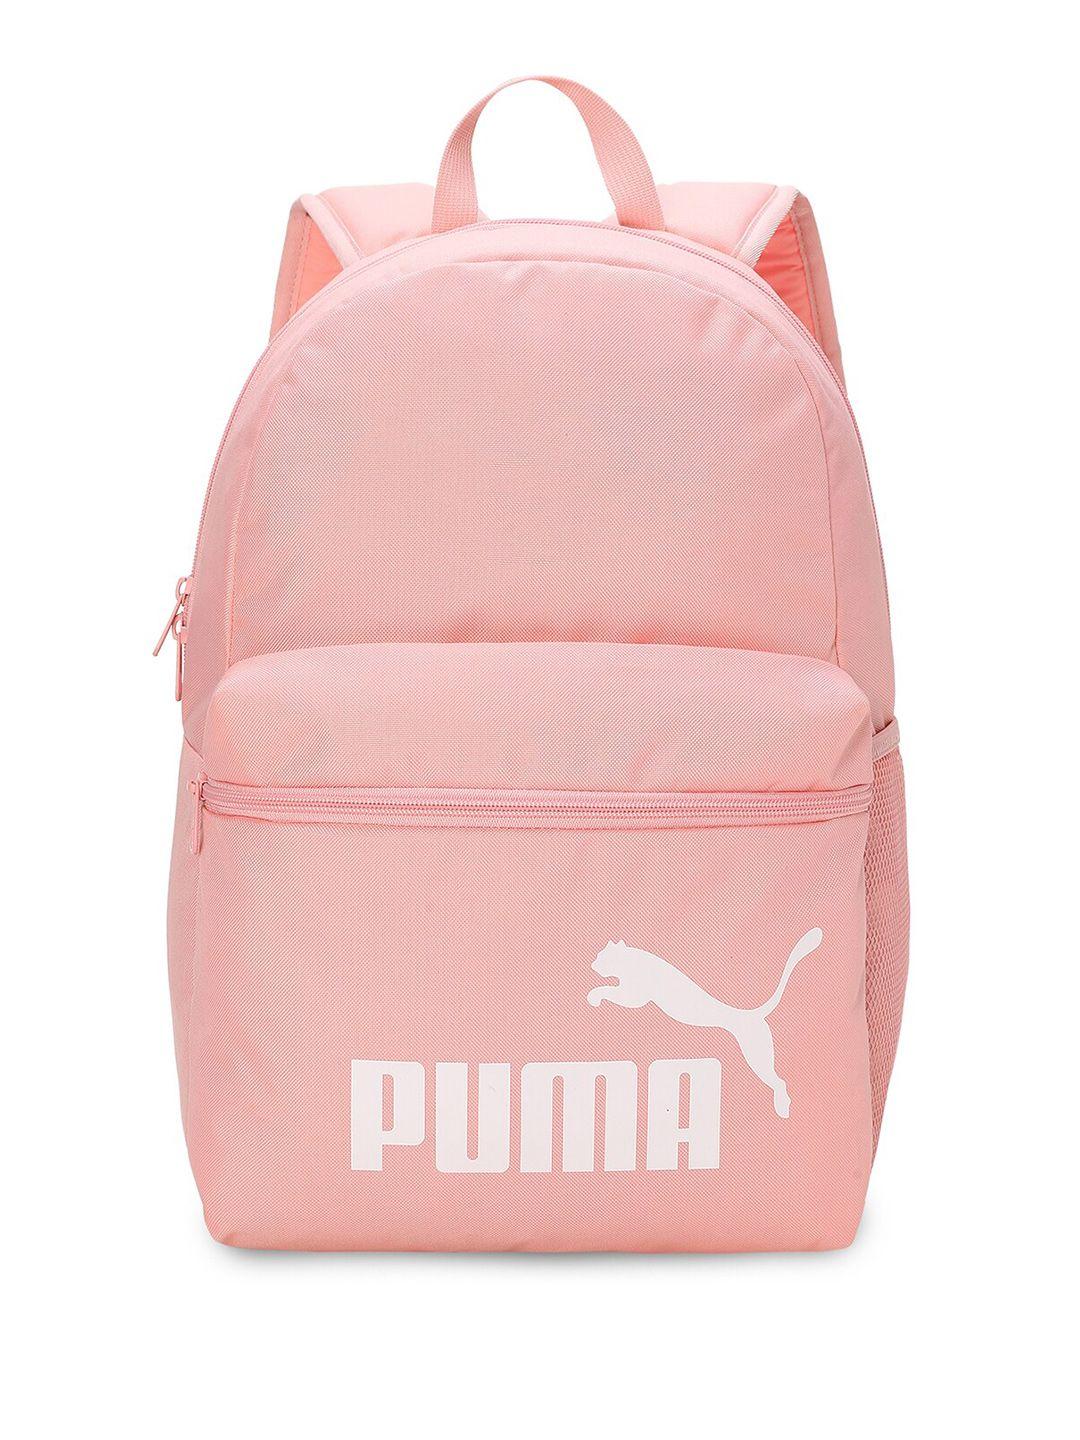 puma phase unisex printed backpack